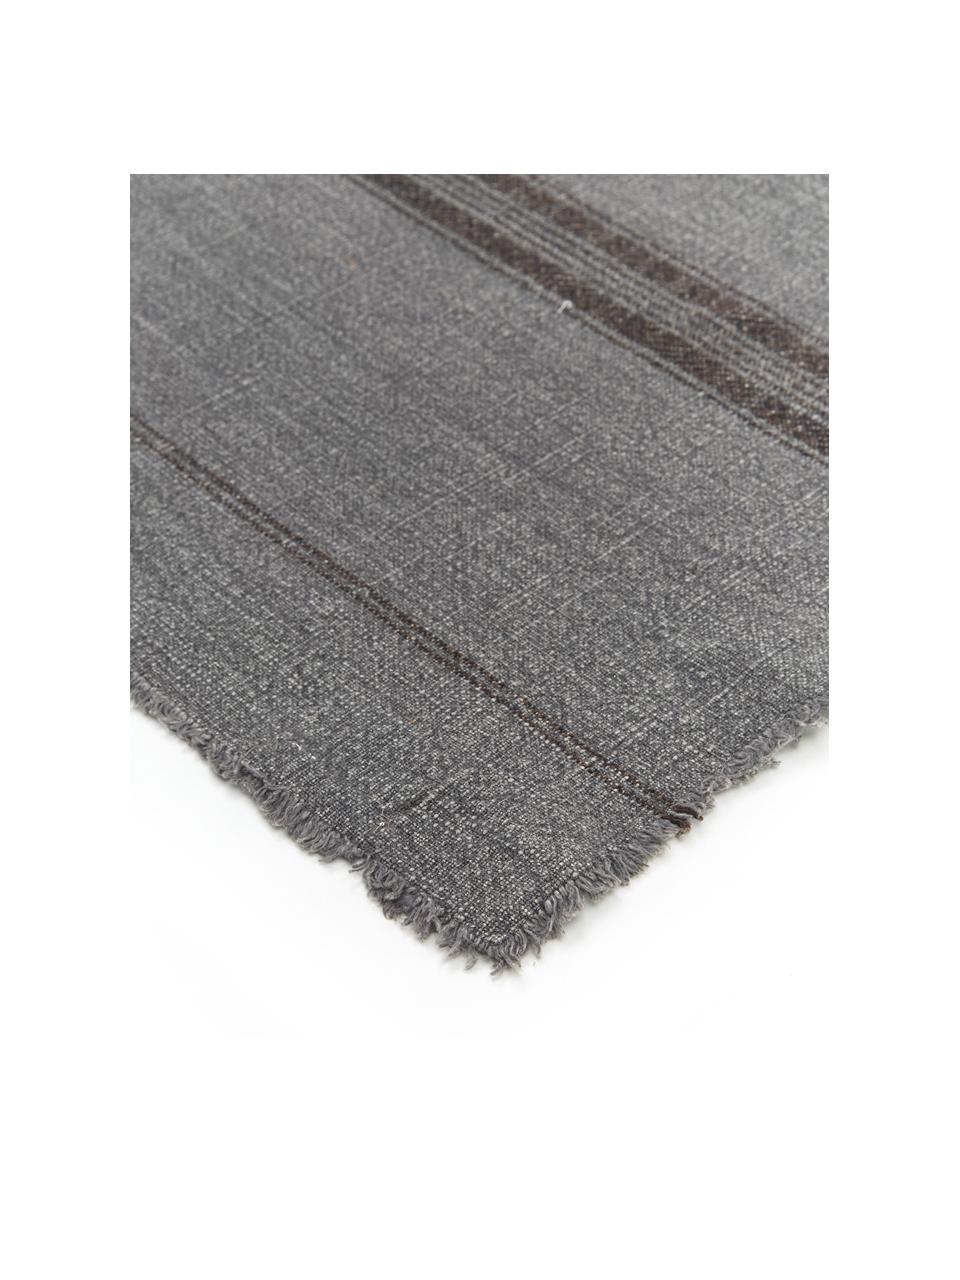 Runner in cotone grigio scuro maculato con frange Ripo, 100% cotone, Grigio scuro, chiazzato, nero, Larg. 40 x Lung. 140 cm